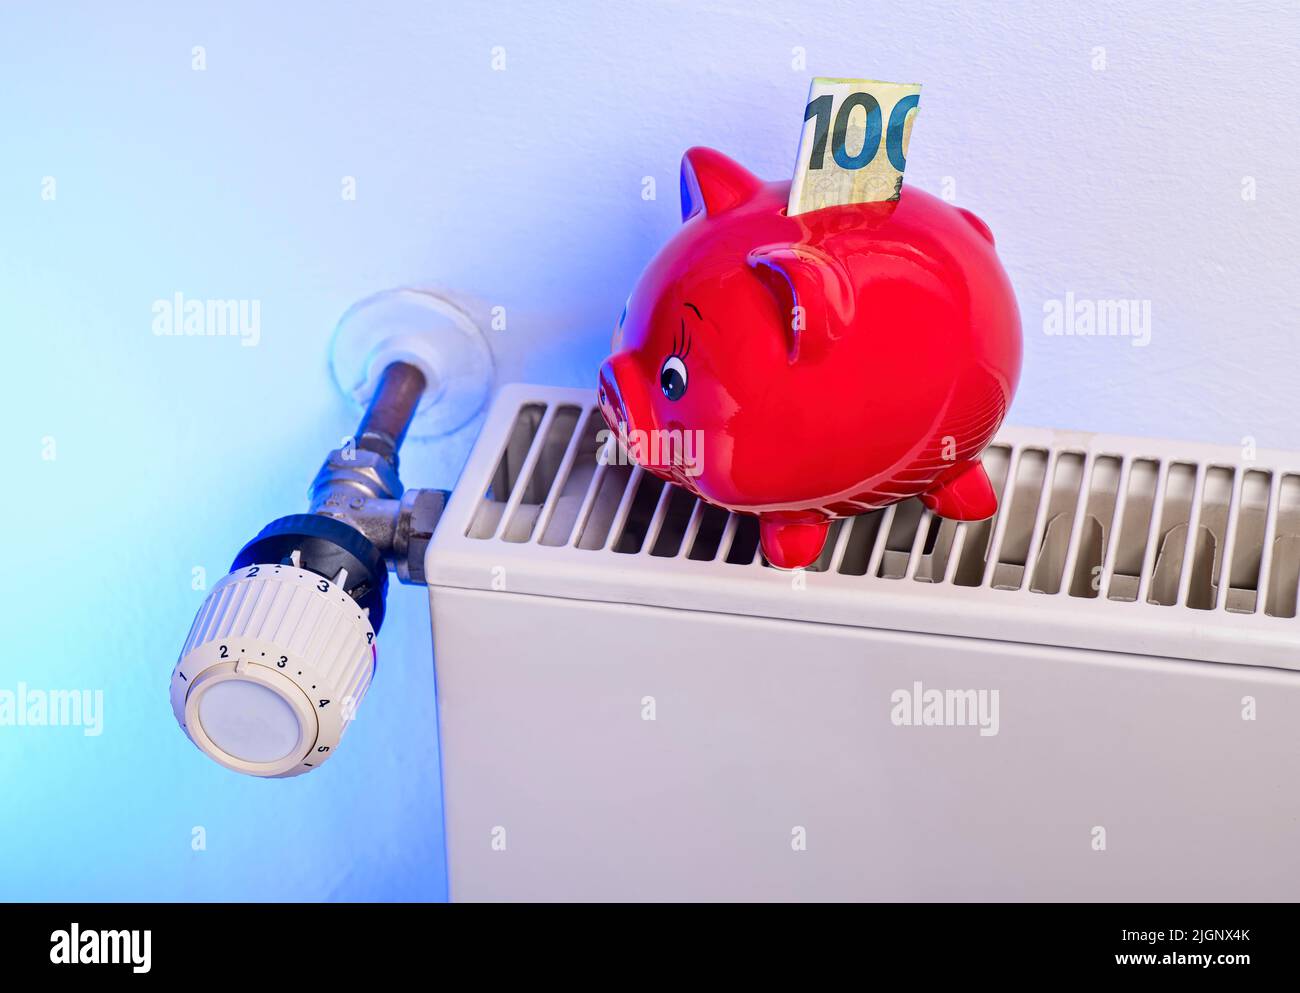 Ahorro para calefacción: Radiador y termostato con banco de cerdos y dinero Foto de stock